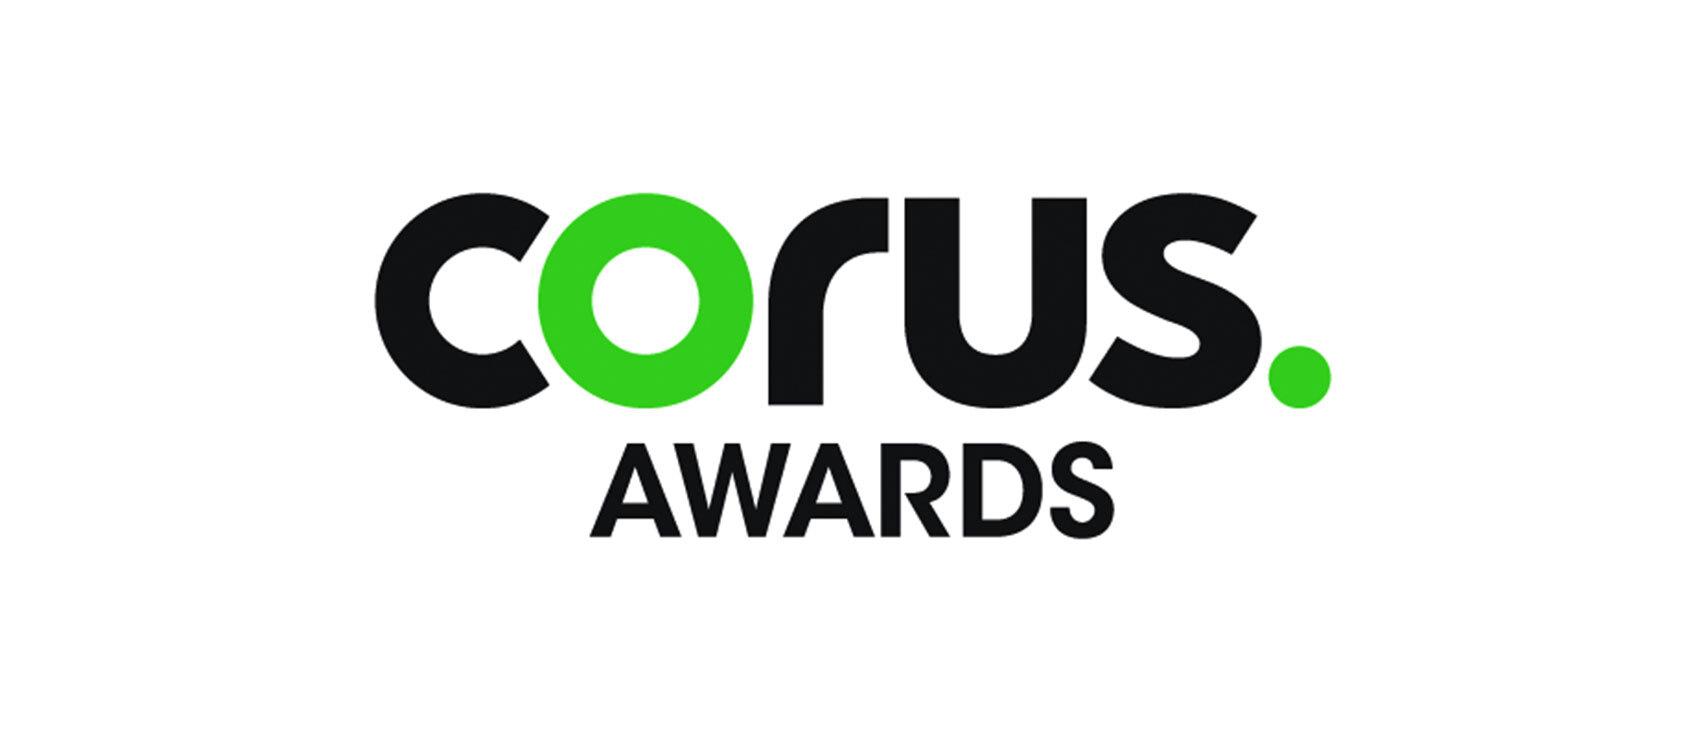 Corus Awards